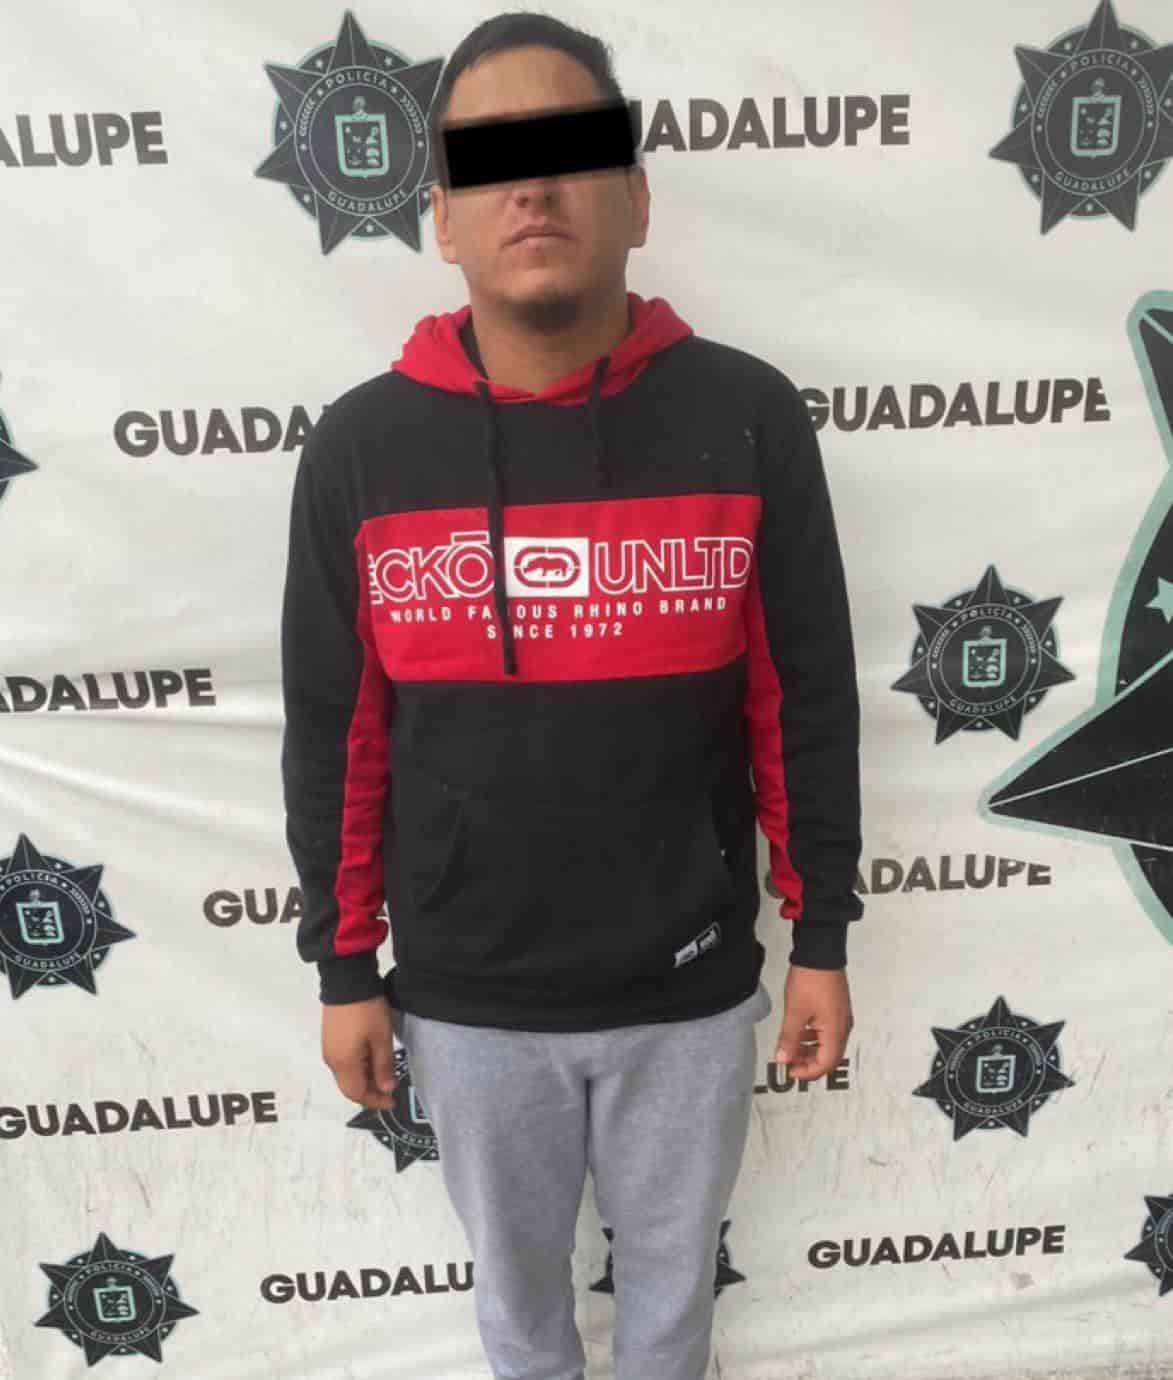 El presunto responsable de al menos 10 asaltos en los municipios de Apodaca, San Nicolás, Juárez y Guadalupe, fue detenido por elementos de la Unidad de Investigación Criminal de la Policía de Guadalupe, luego de que le encontraron droga en su poder.